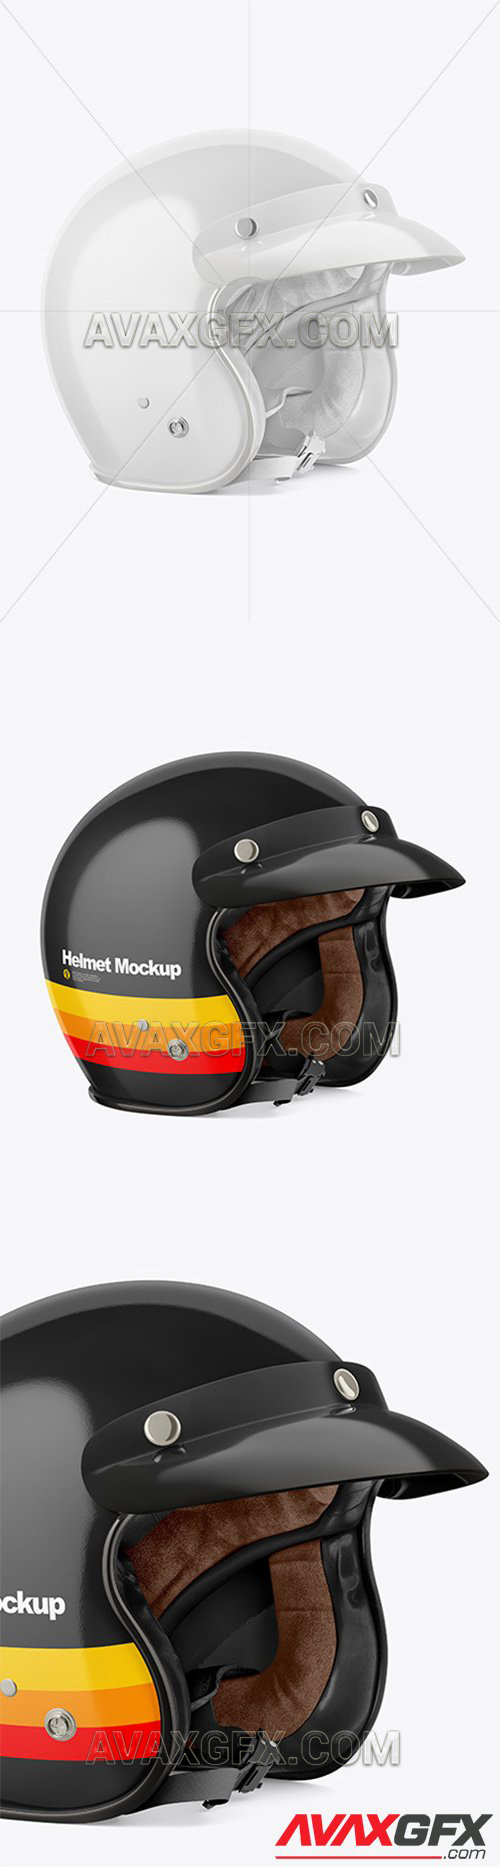 Motorcycle Helmet Mockup 57528